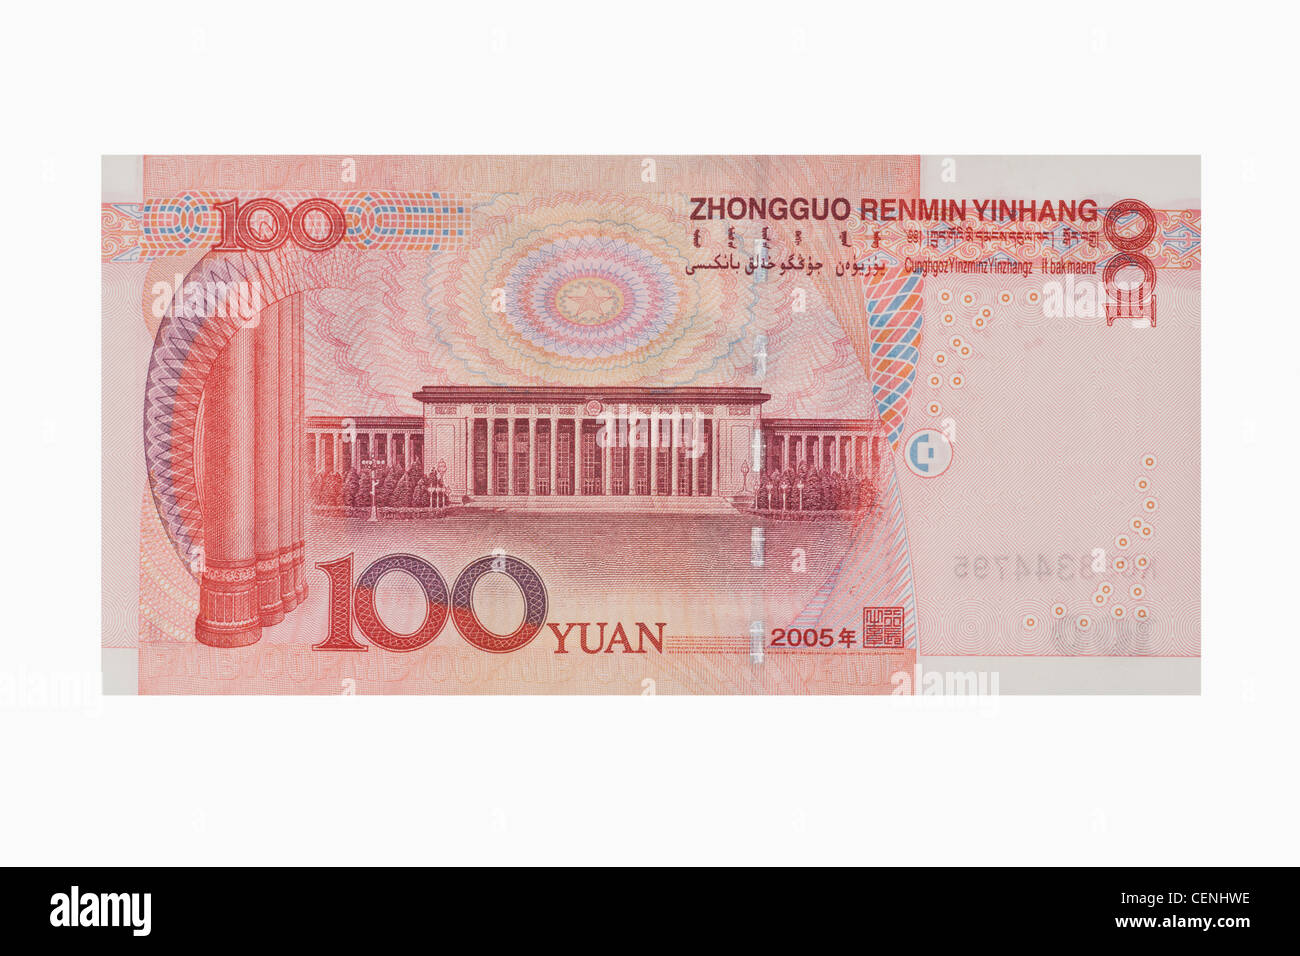 Lato posteriore del 100 yuan bill. Il renminbi, la valuta cinese, è stato introdotto nel 1949 dopo la fondazione della Repubblica popolare cinese. Foto Stock